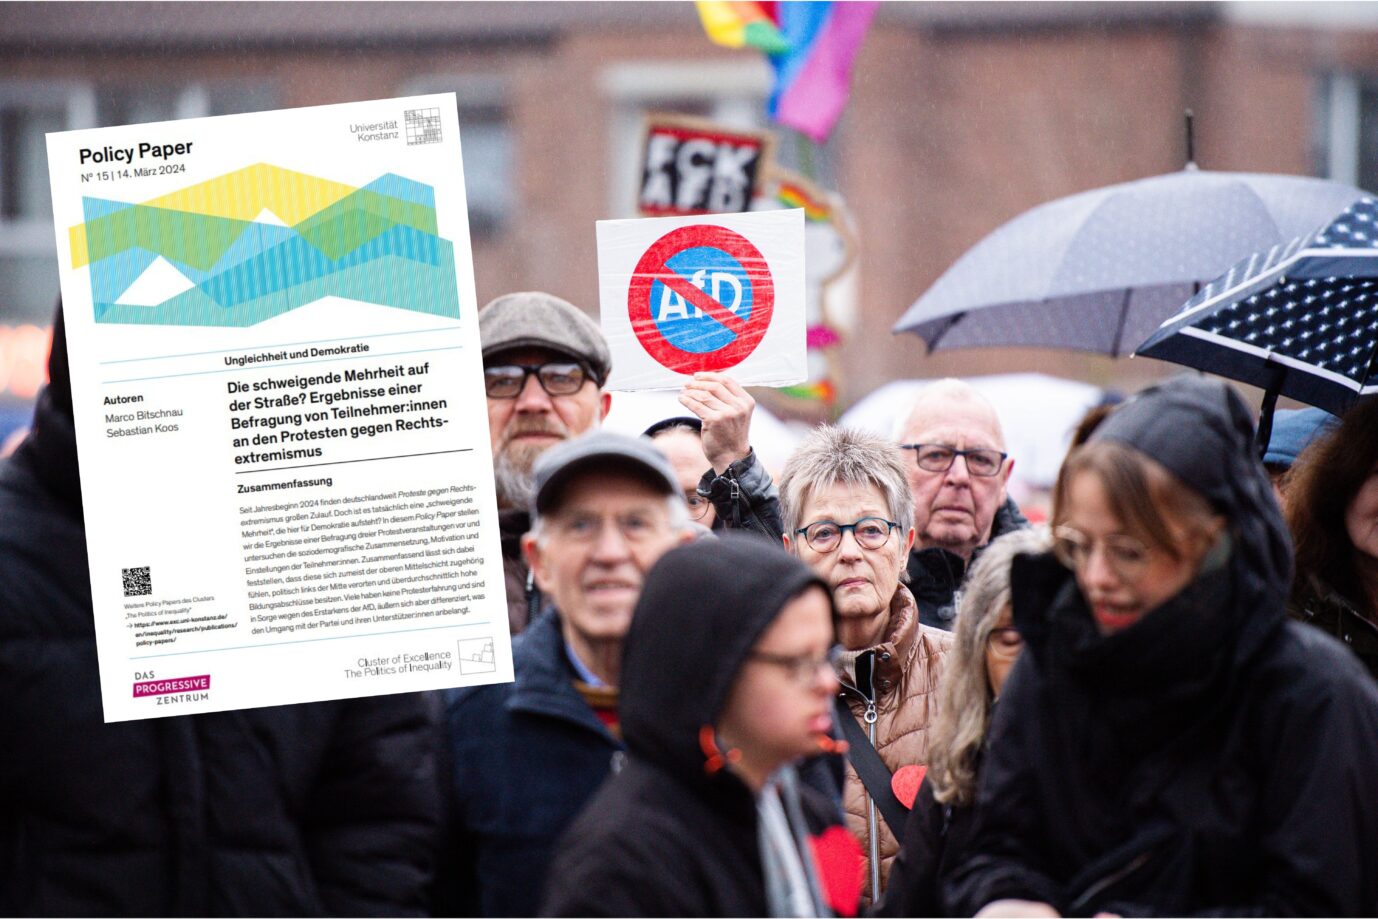 Eine Studie der Uni Konstanz hinterläßt Kratzer an der Wunschvorstellung vieler Politiker, daß die Anti-AfD-Demos ein Projekt der gesellschaftlichen Mitte sind Montage: picture alliance / Noah Wedel | Noah Wedel/ Uni Konstanz